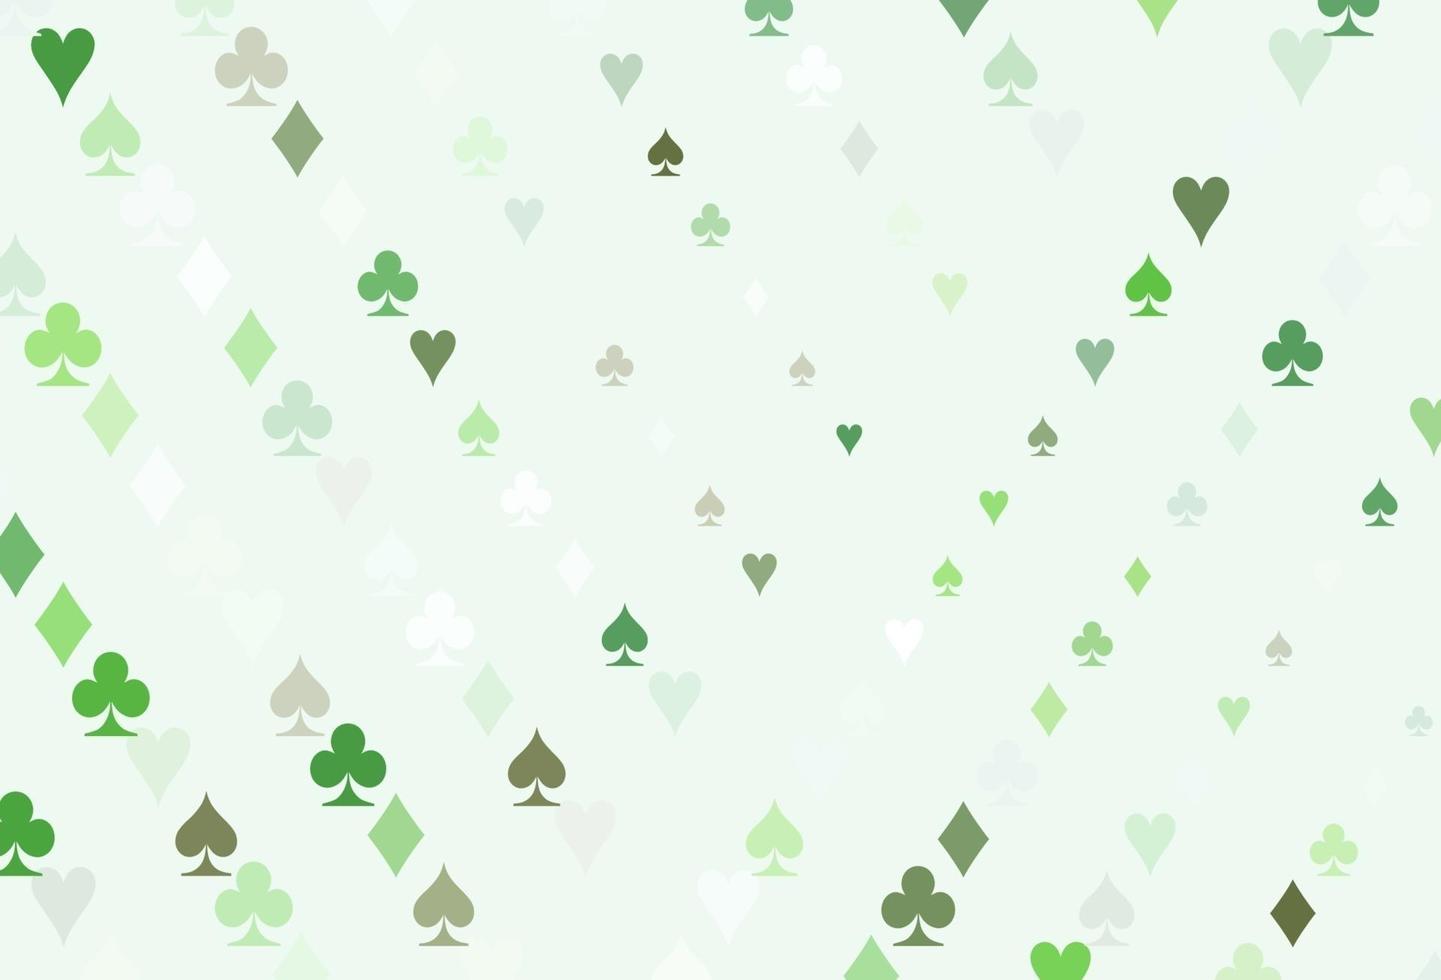 modello vettoriale verde chiaro con il simbolo delle carte.